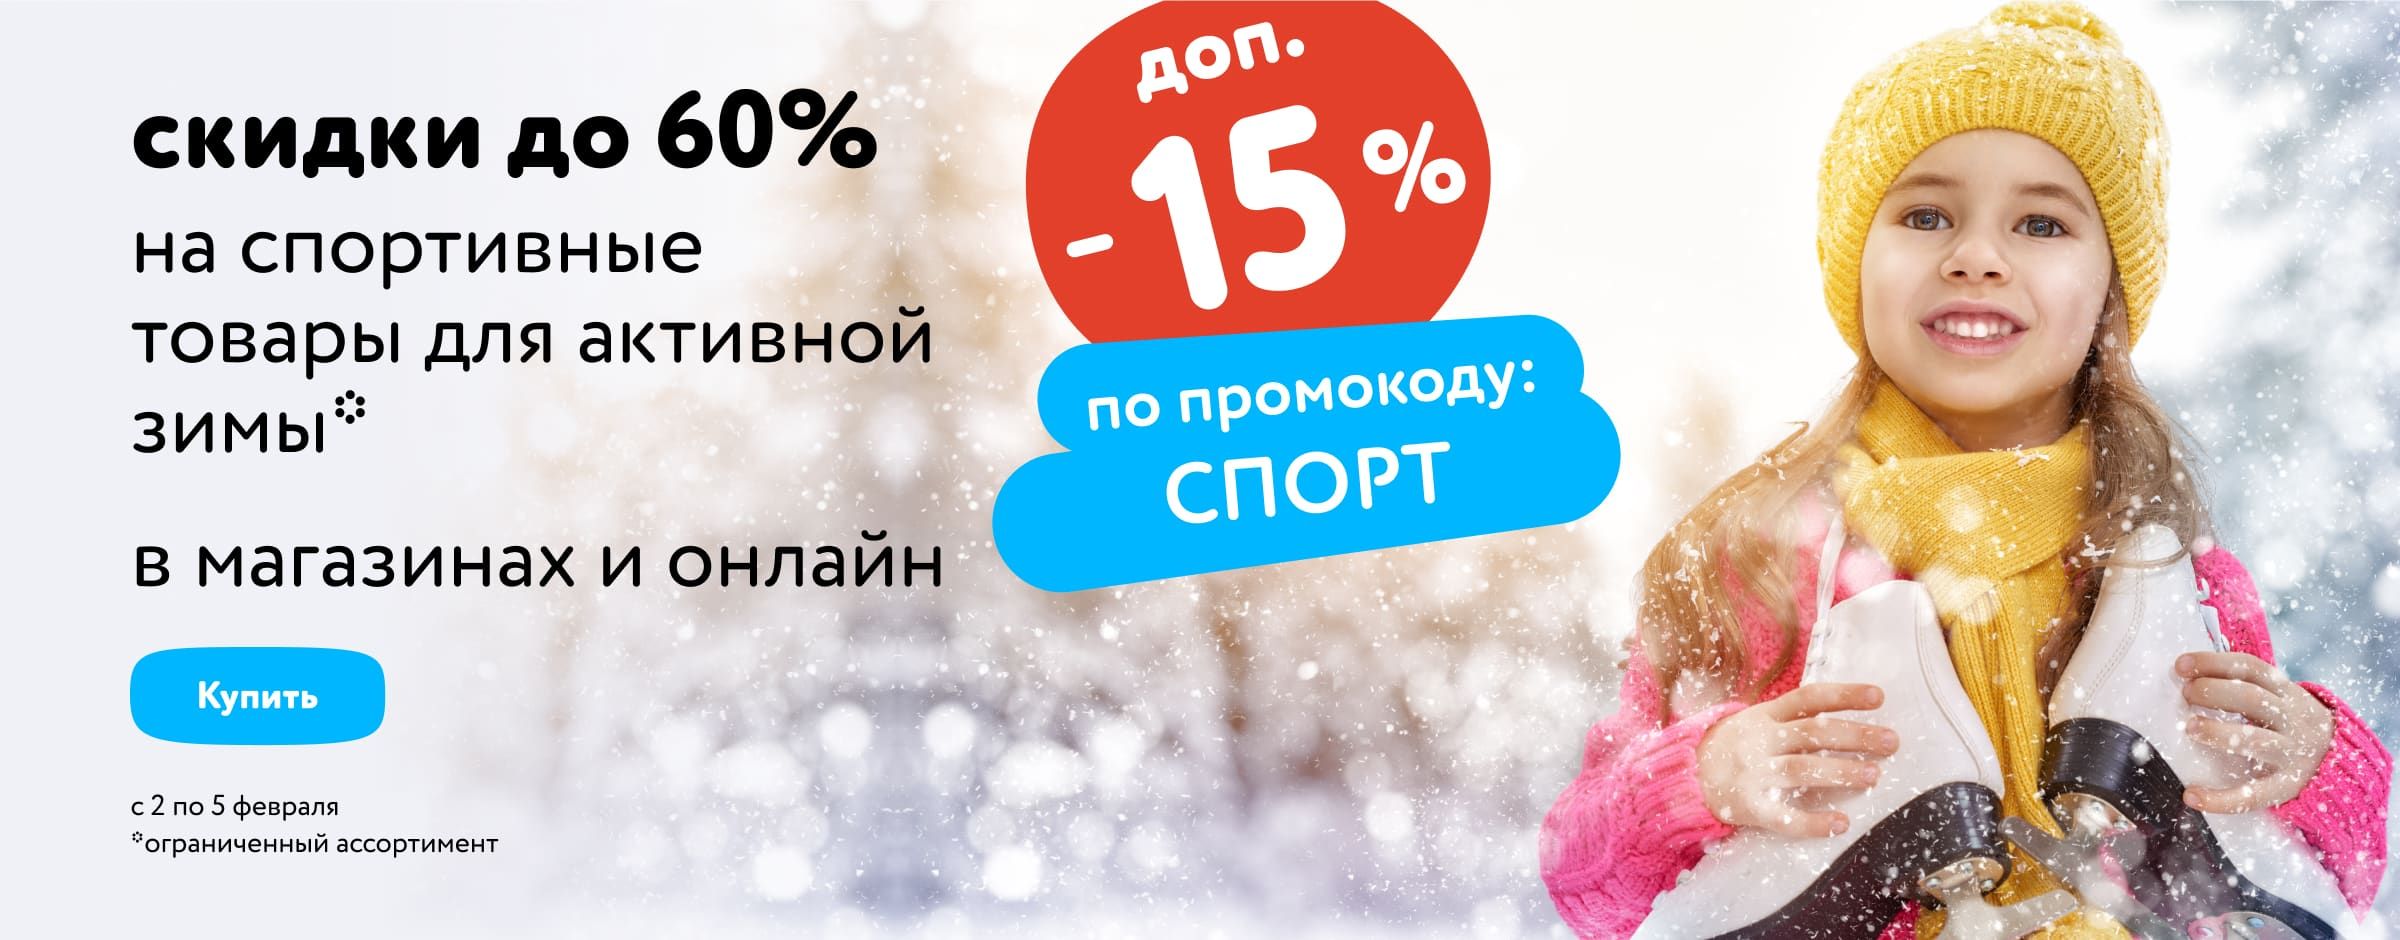 Доп. скидка 15% на спортивные товары для активной зимы по промокоду_карусель категории